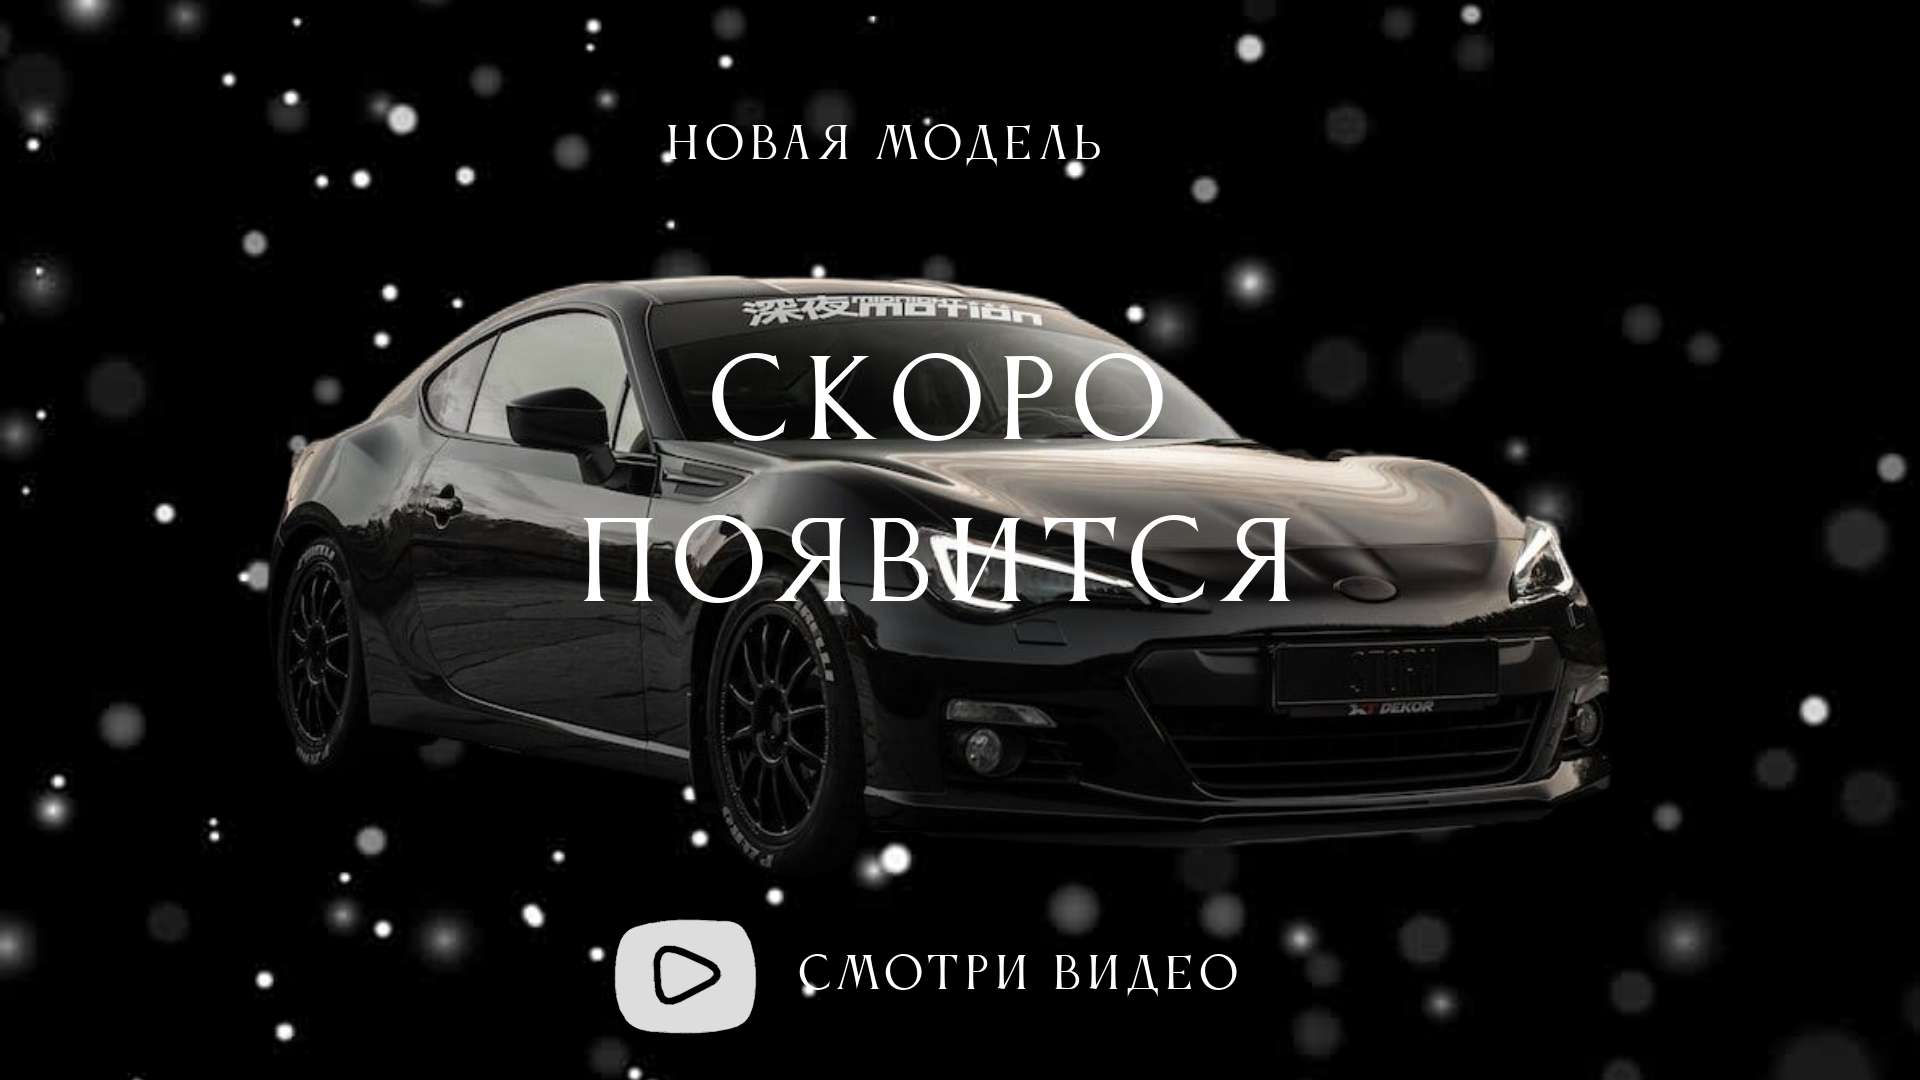 Секс в машине вк - смотреть русское порно видео онлайн